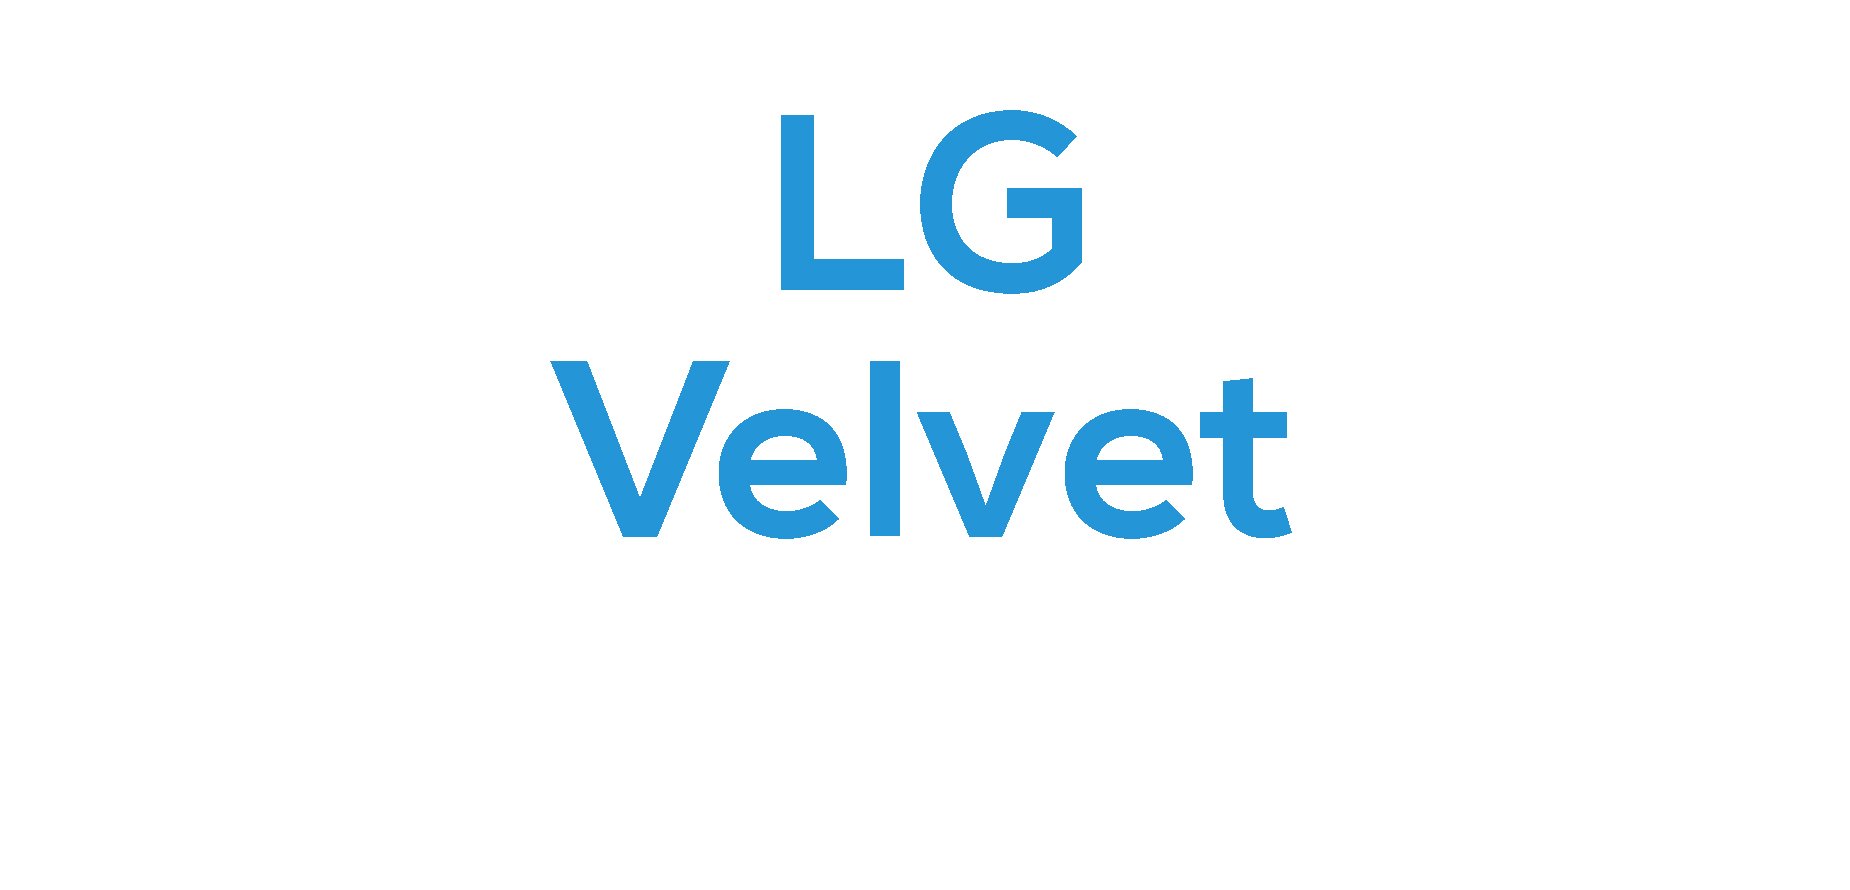 LG Velvet